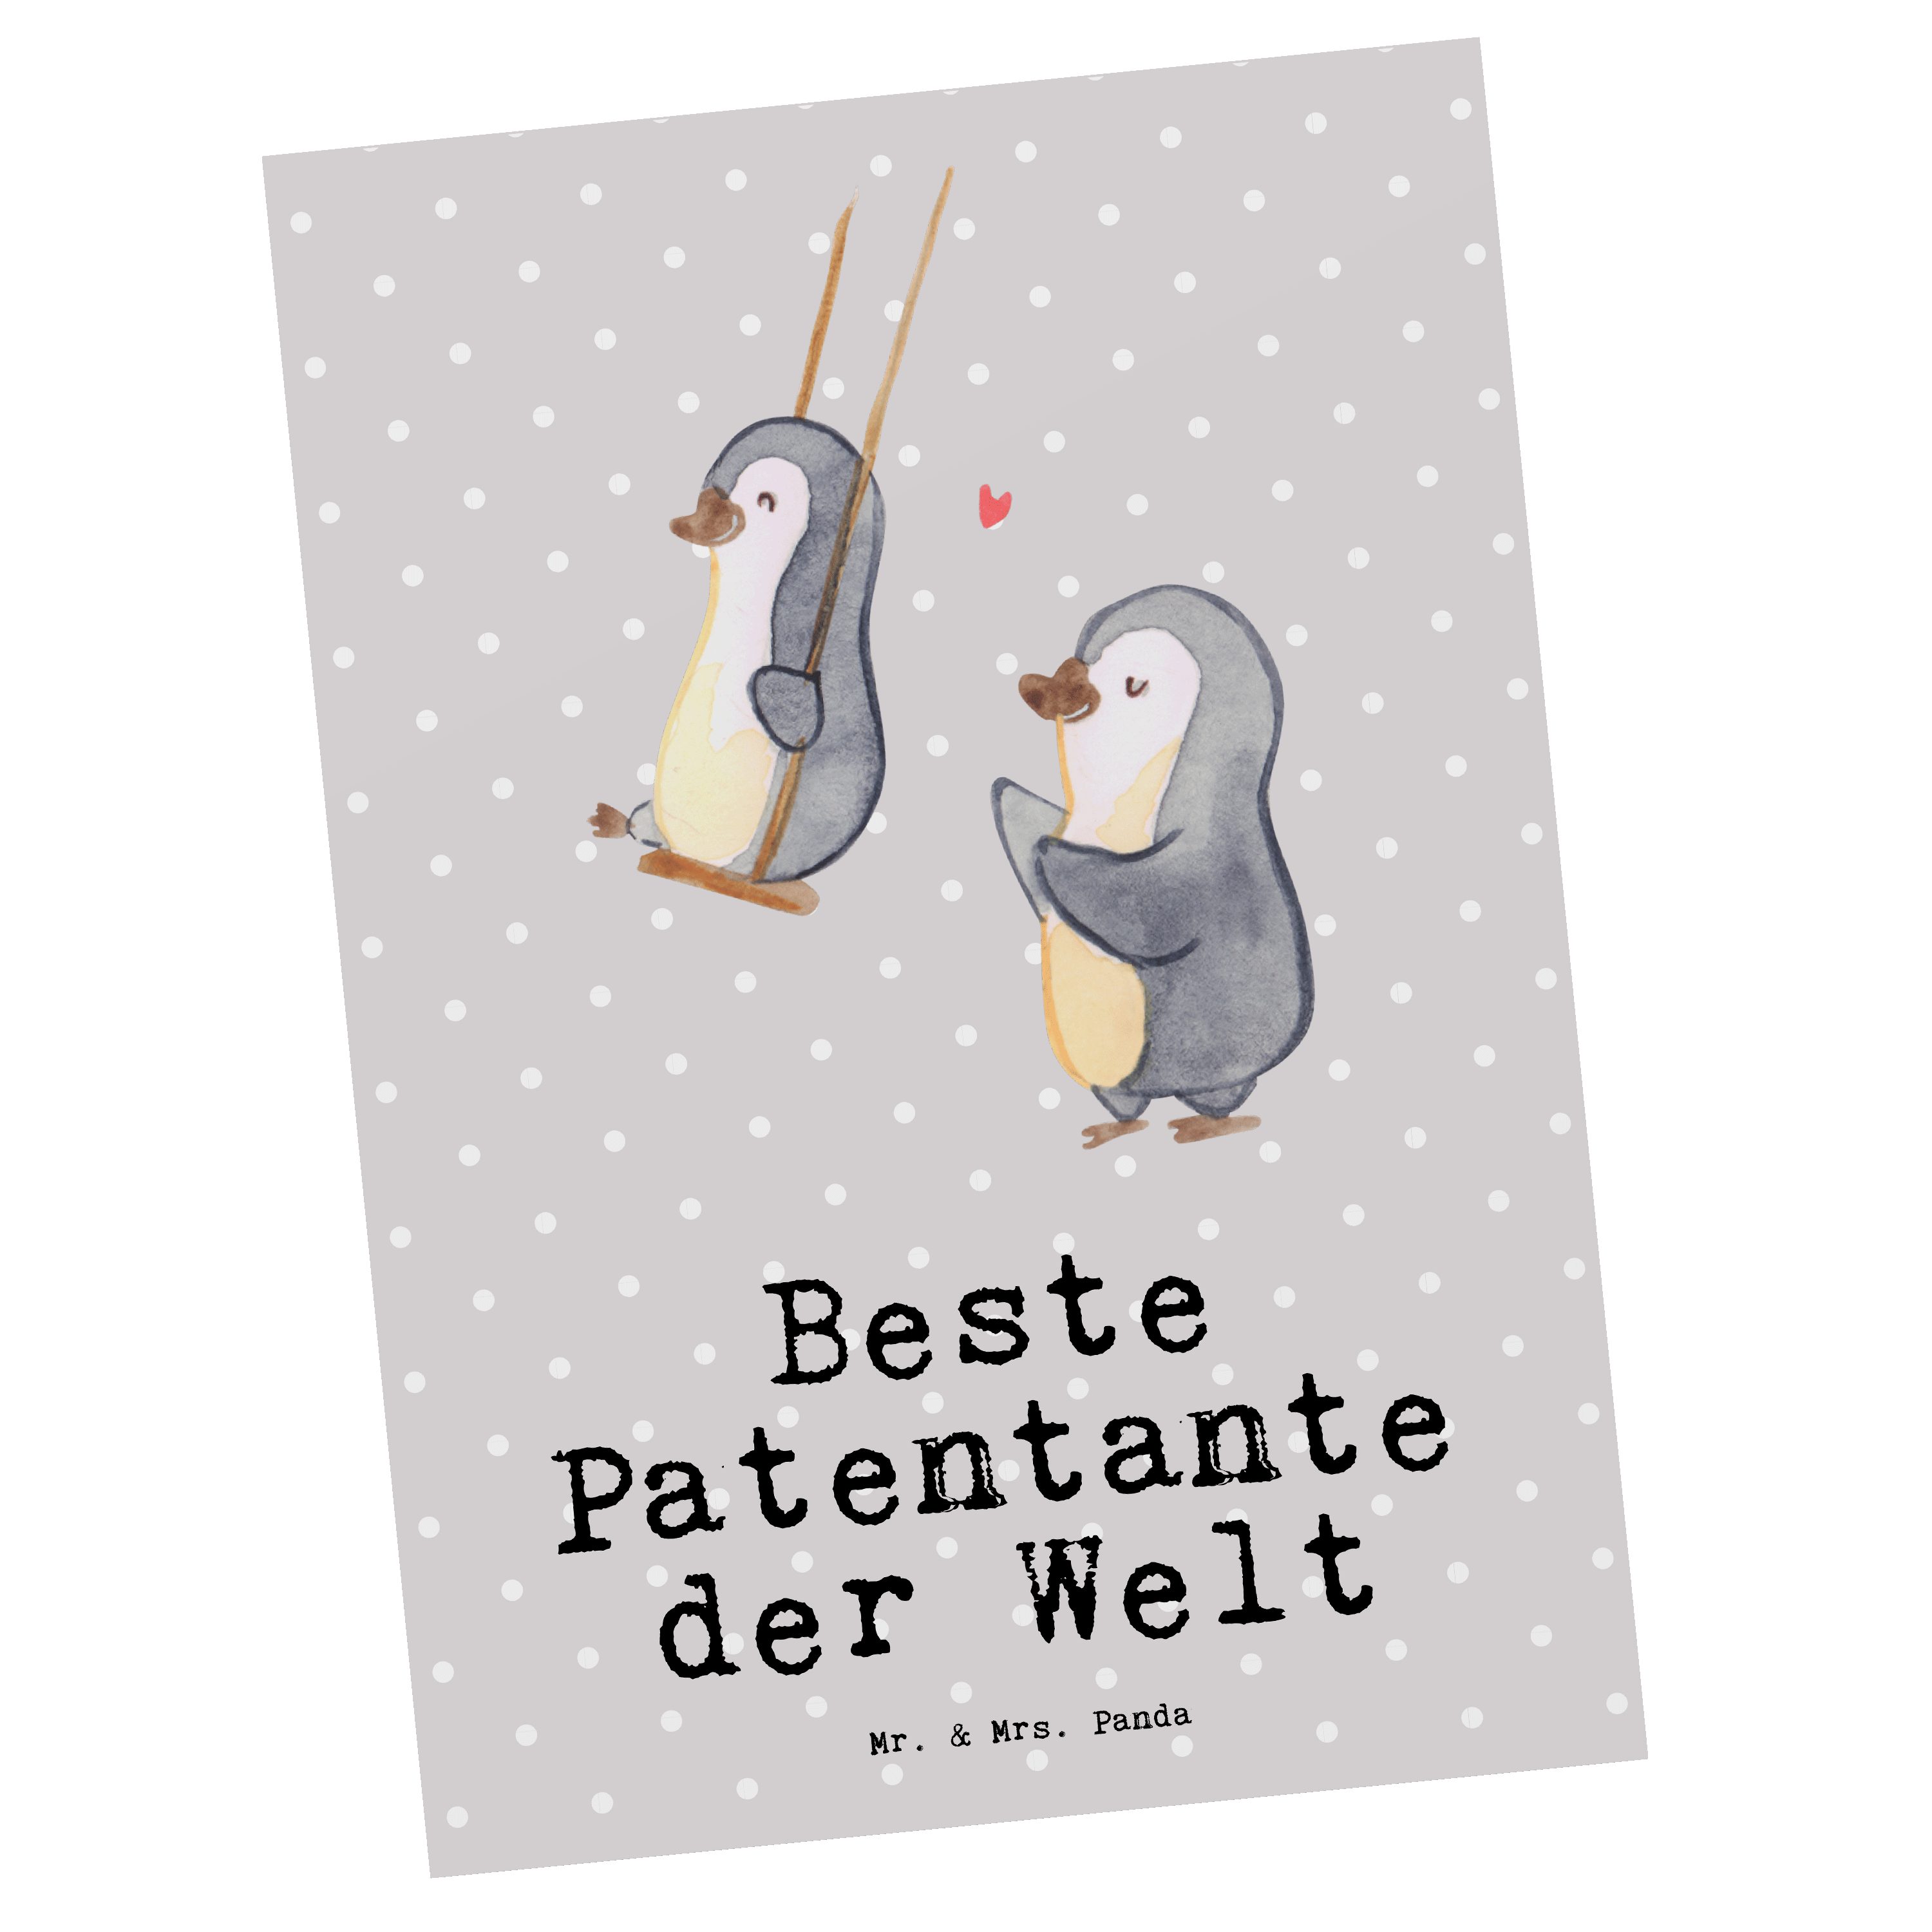 Mr. & Mrs. Panda Patentante Pinguin Geschenk, Postkarte - der Grau Welt Geschenk Pastell Beste 